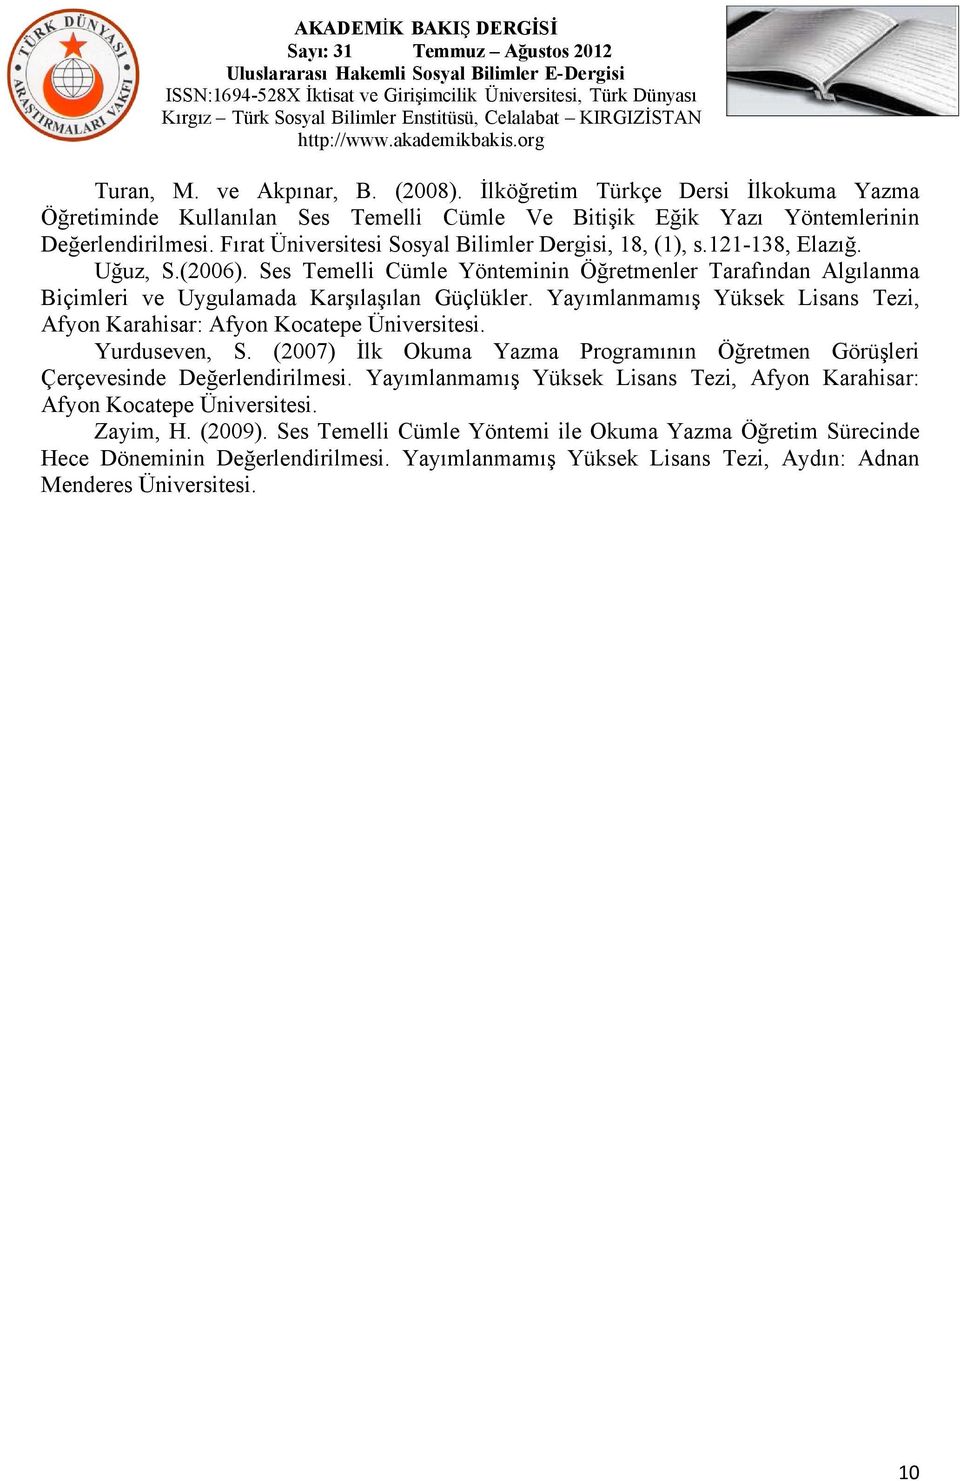 Yayımlanmamış Yüksek Lisans Tezi, Afyon Karahisar: Afyon Kocatepe Üniversitesi. Yurduseven, S. (2007) İlk Okuma Yazma Programının Öğretmen Görüşleri Çerçevesinde Değerlendirilmesi.